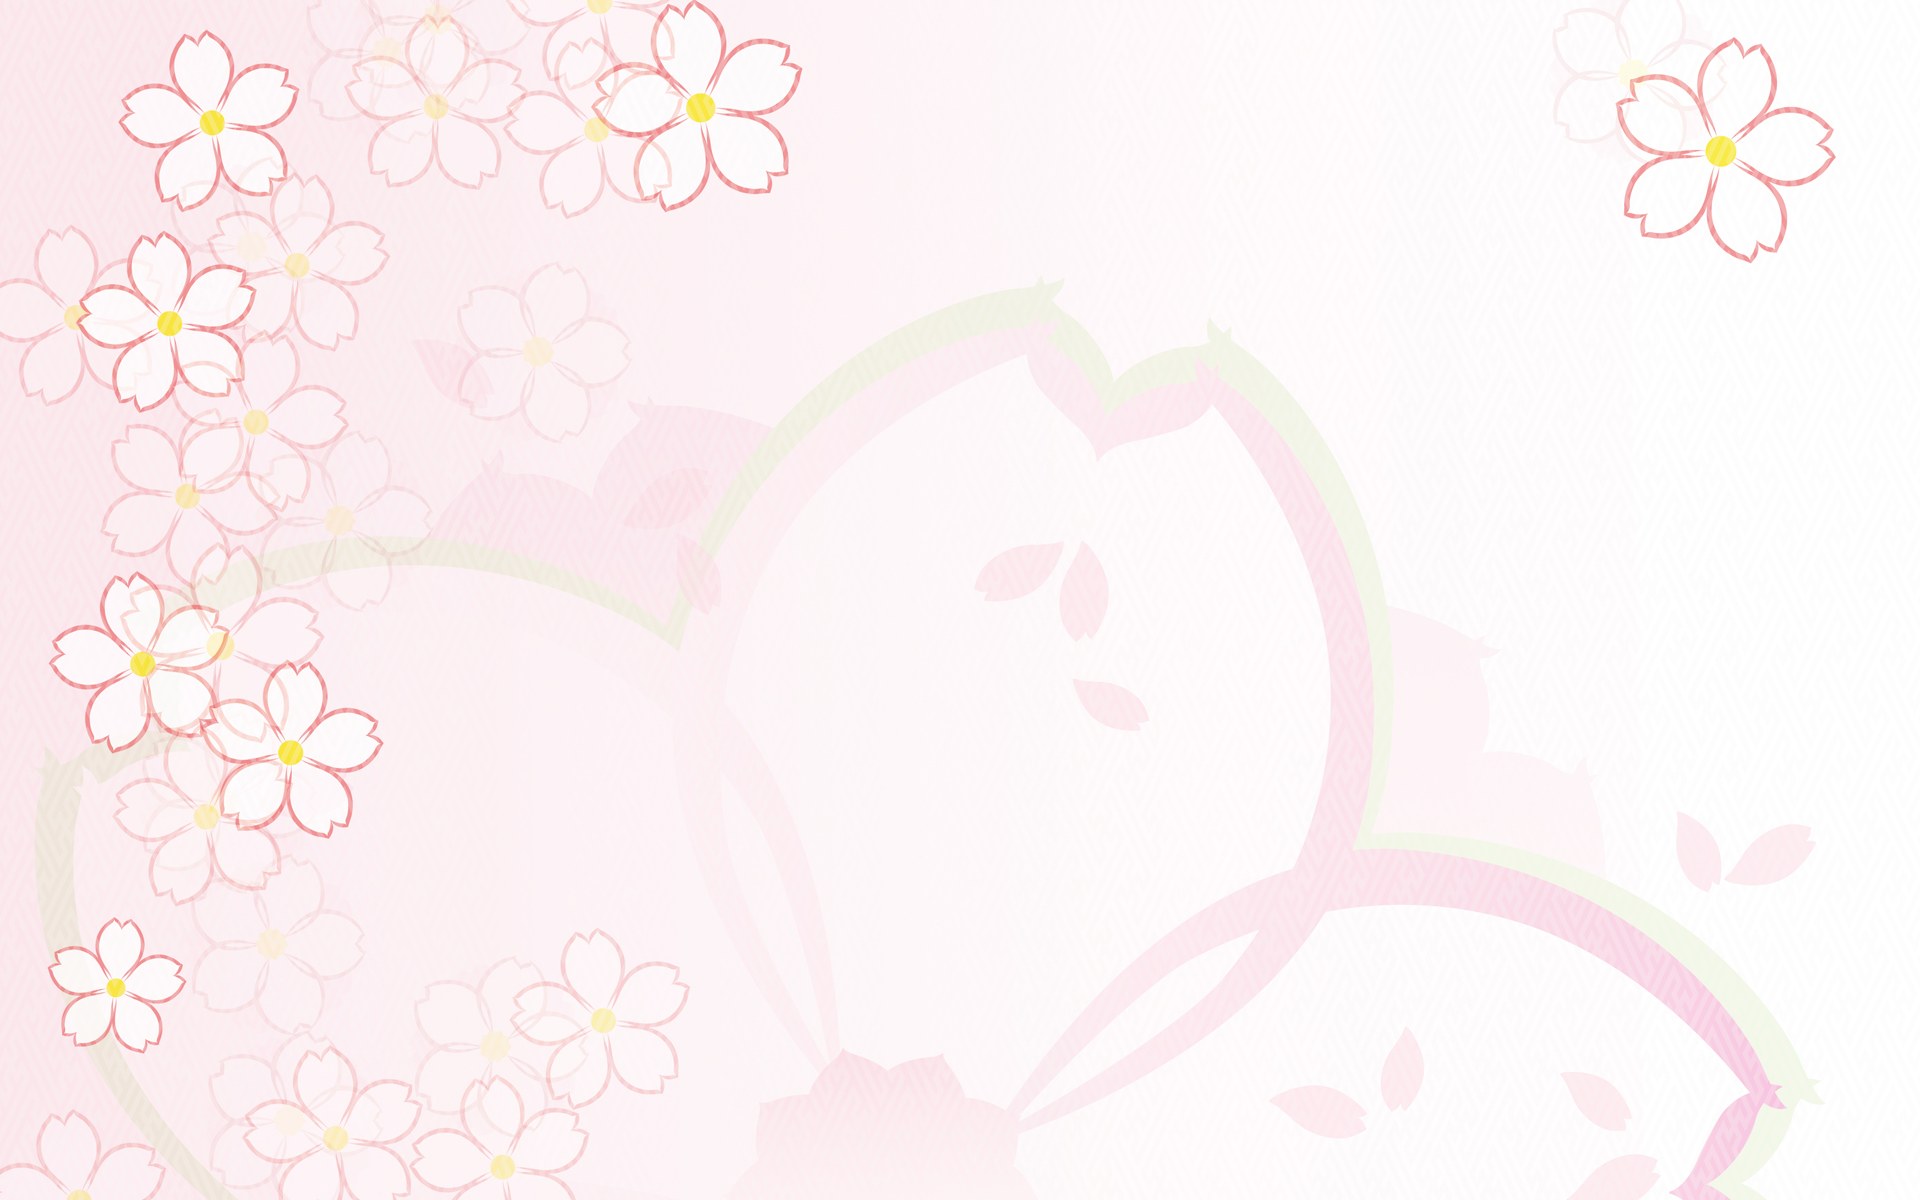 壁纸1920x1200 日本风格 甜美碎花图案图片壁纸 美丽碎花布 之 粉红甜美系壁纸 美丽碎花布 之 粉红甜美系图片 美丽碎花布 之 粉红甜美系素材 花卉壁纸 花卉图库 花卉图片素材桌面壁纸